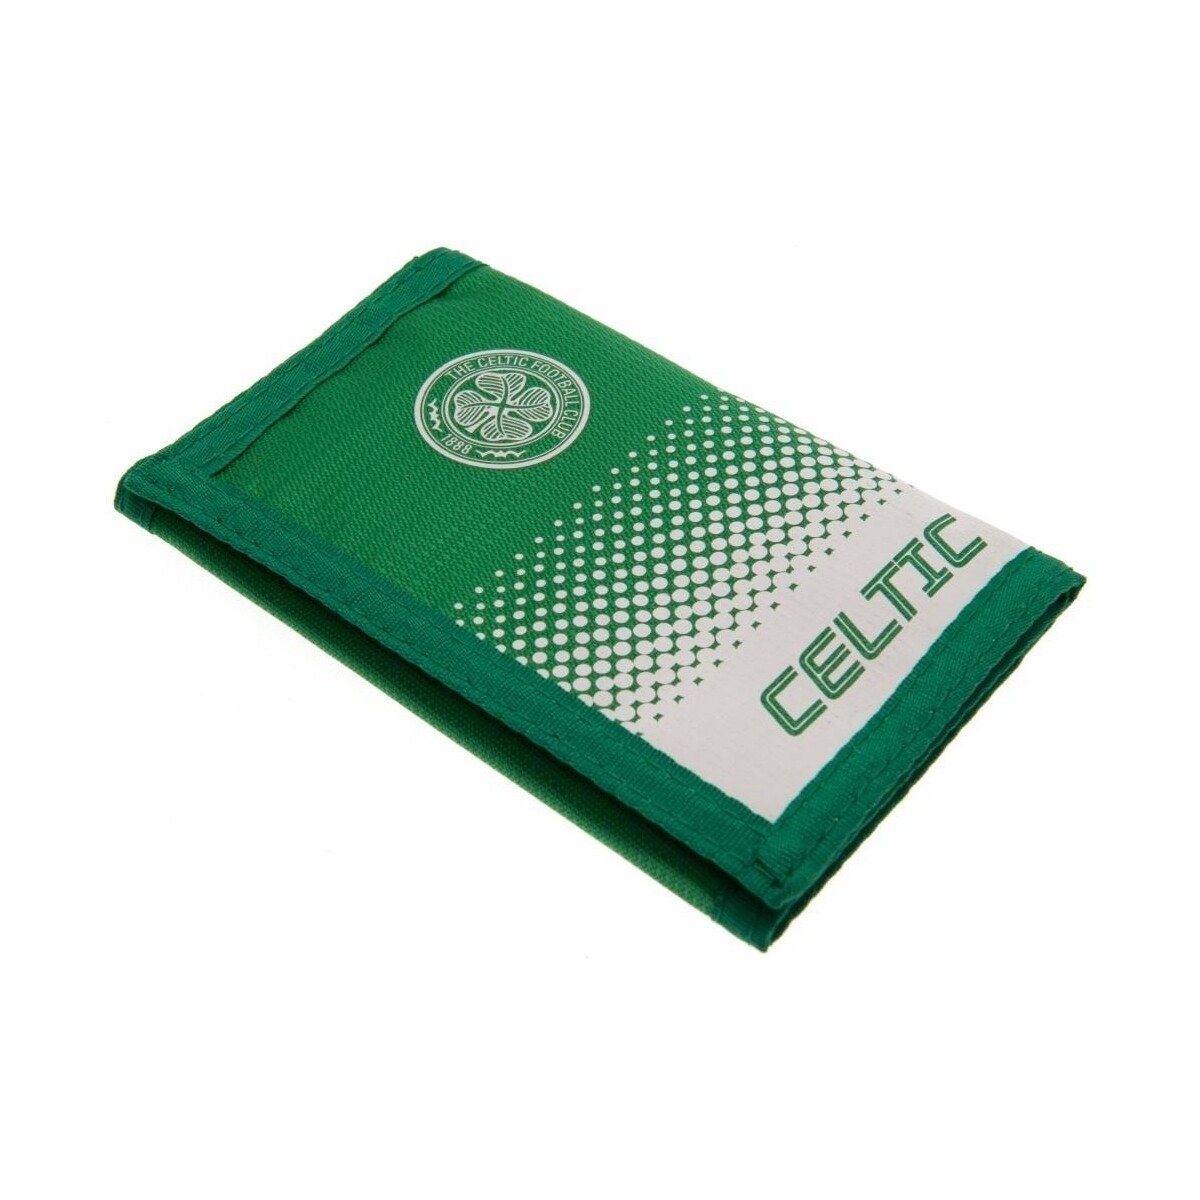 Sacs Porte-monnaie Celtic Fc TA5976 Vert